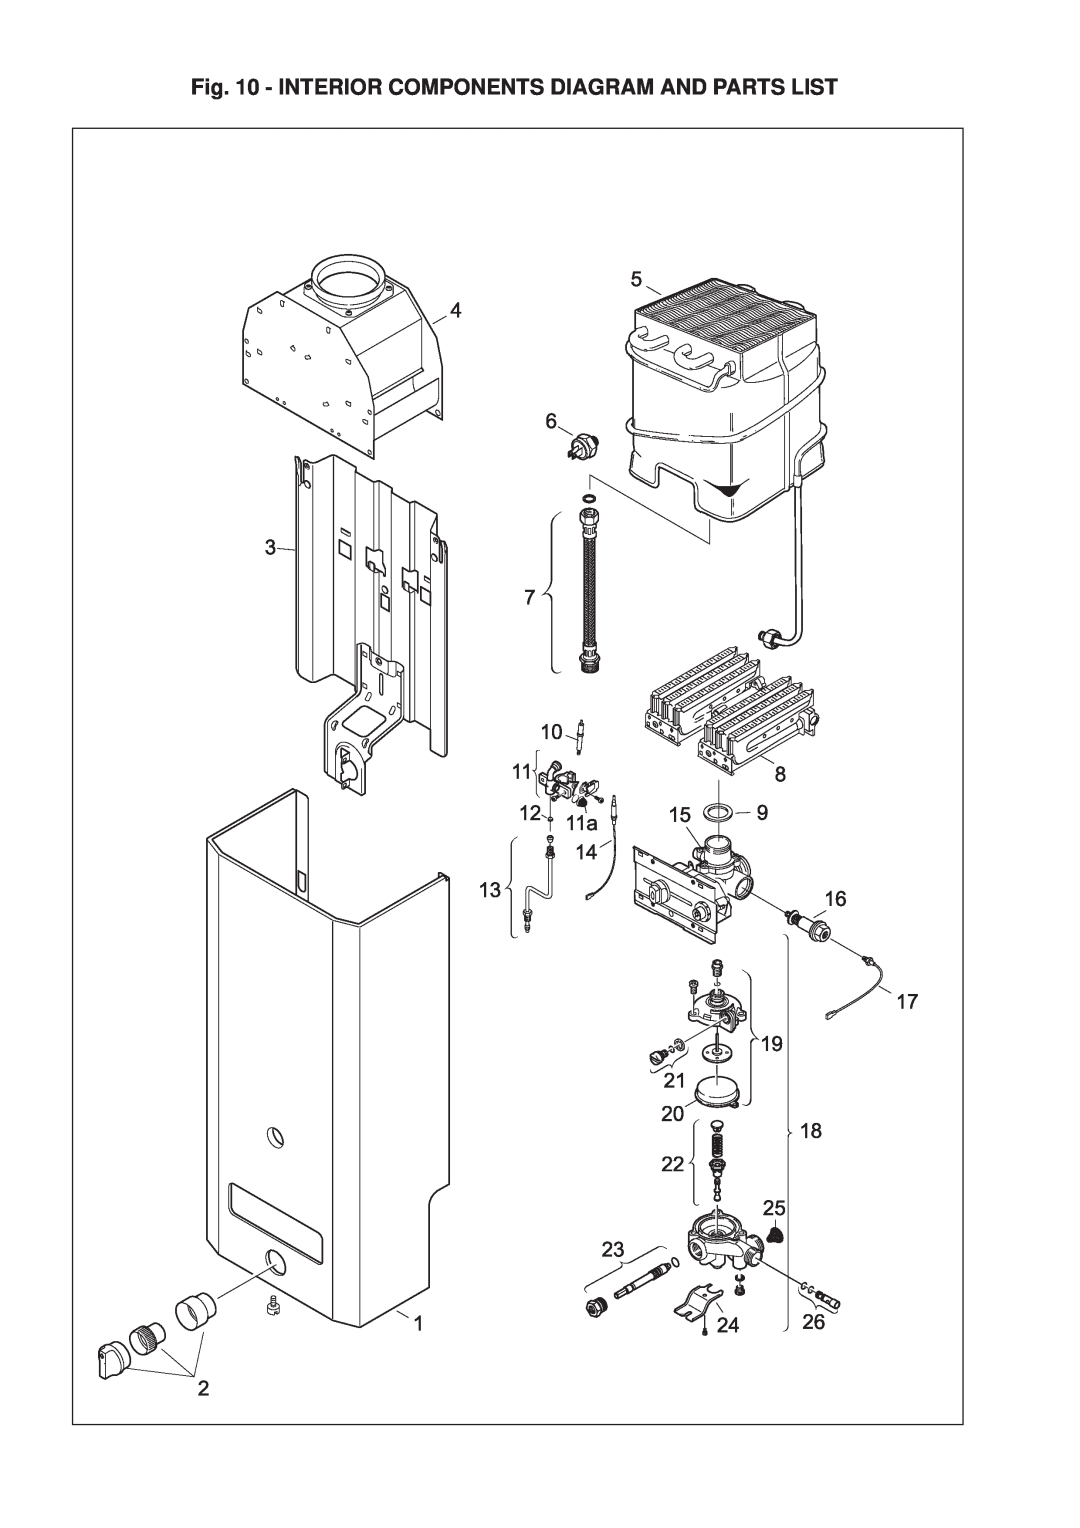 AquaStar 38B NG, 38B LP specifications Interior Components Diagram And Parts List 